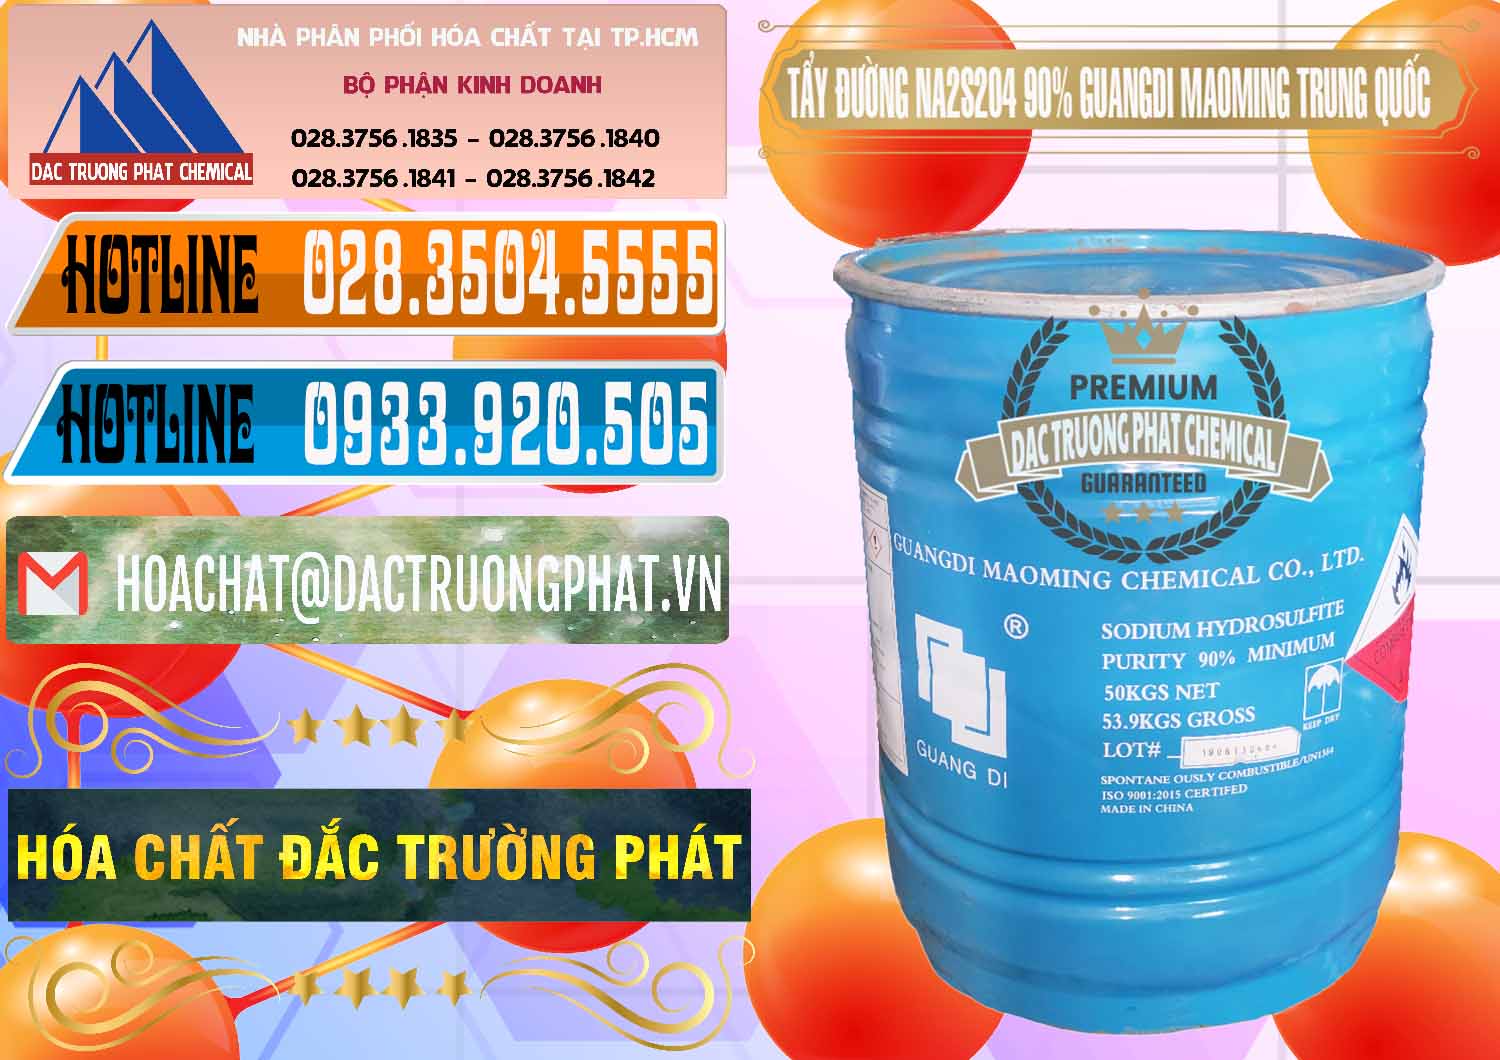 Nơi chuyên bán & cung cấp Tẩy Đường - NA2S2O4 Guangdi Maoming Trung Quốc China - 0160 - Cung cấp & phân phối hóa chất tại TP.HCM - stmp.net